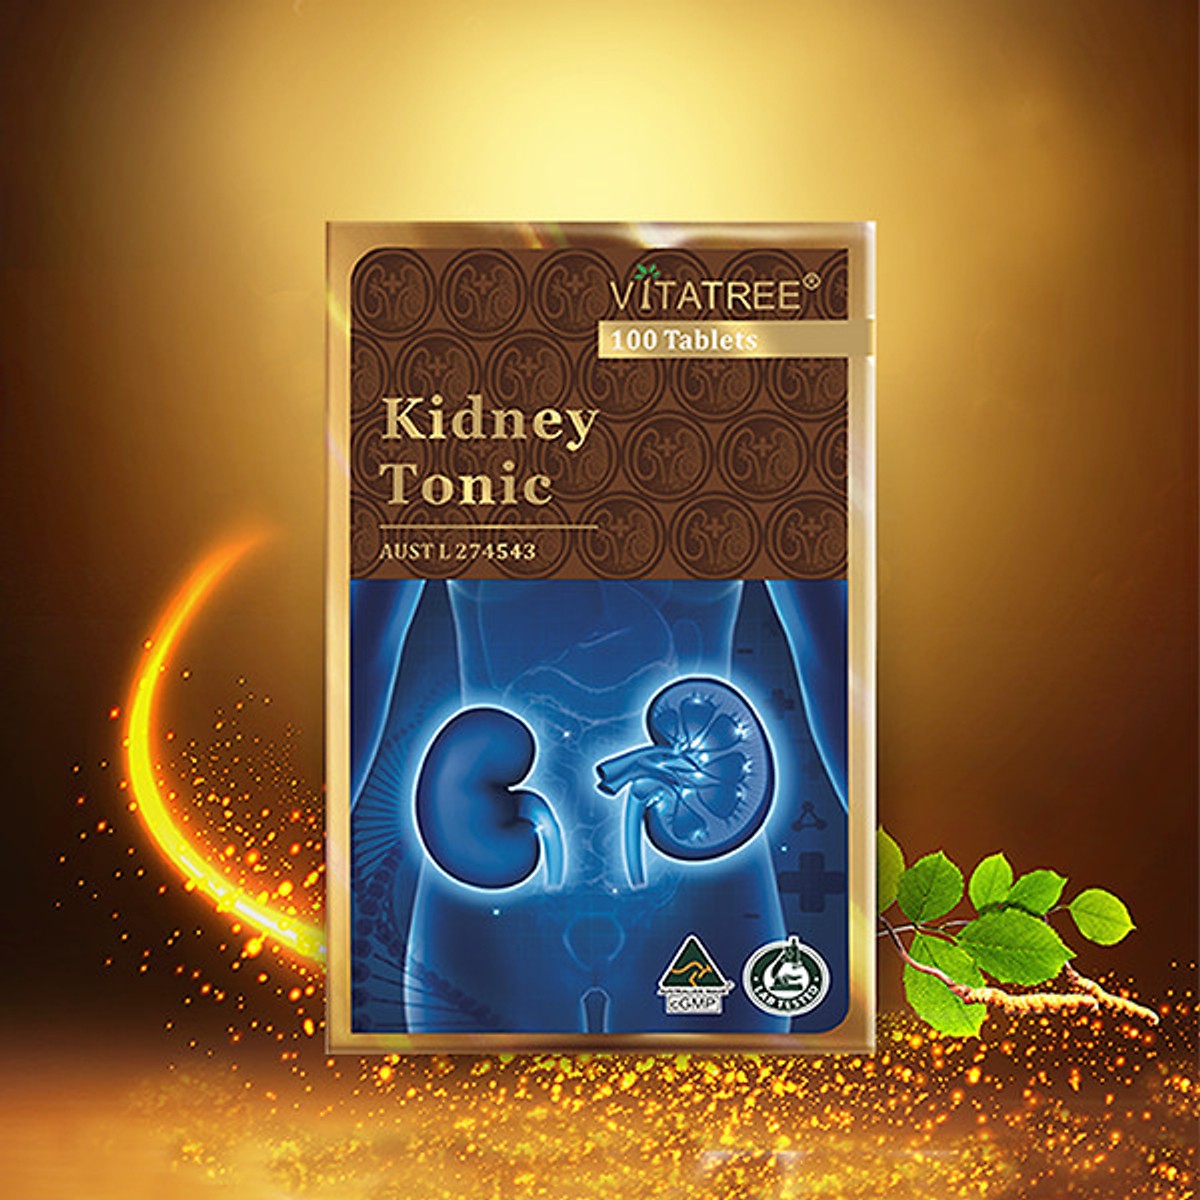 Thuốc bổ thận Kidney Tonic hãng Vitatree – Australia chữa bệnh yếu sinh lý, sỏi thận, tiểu đêm, tiểu buốt, tiểu rắt.